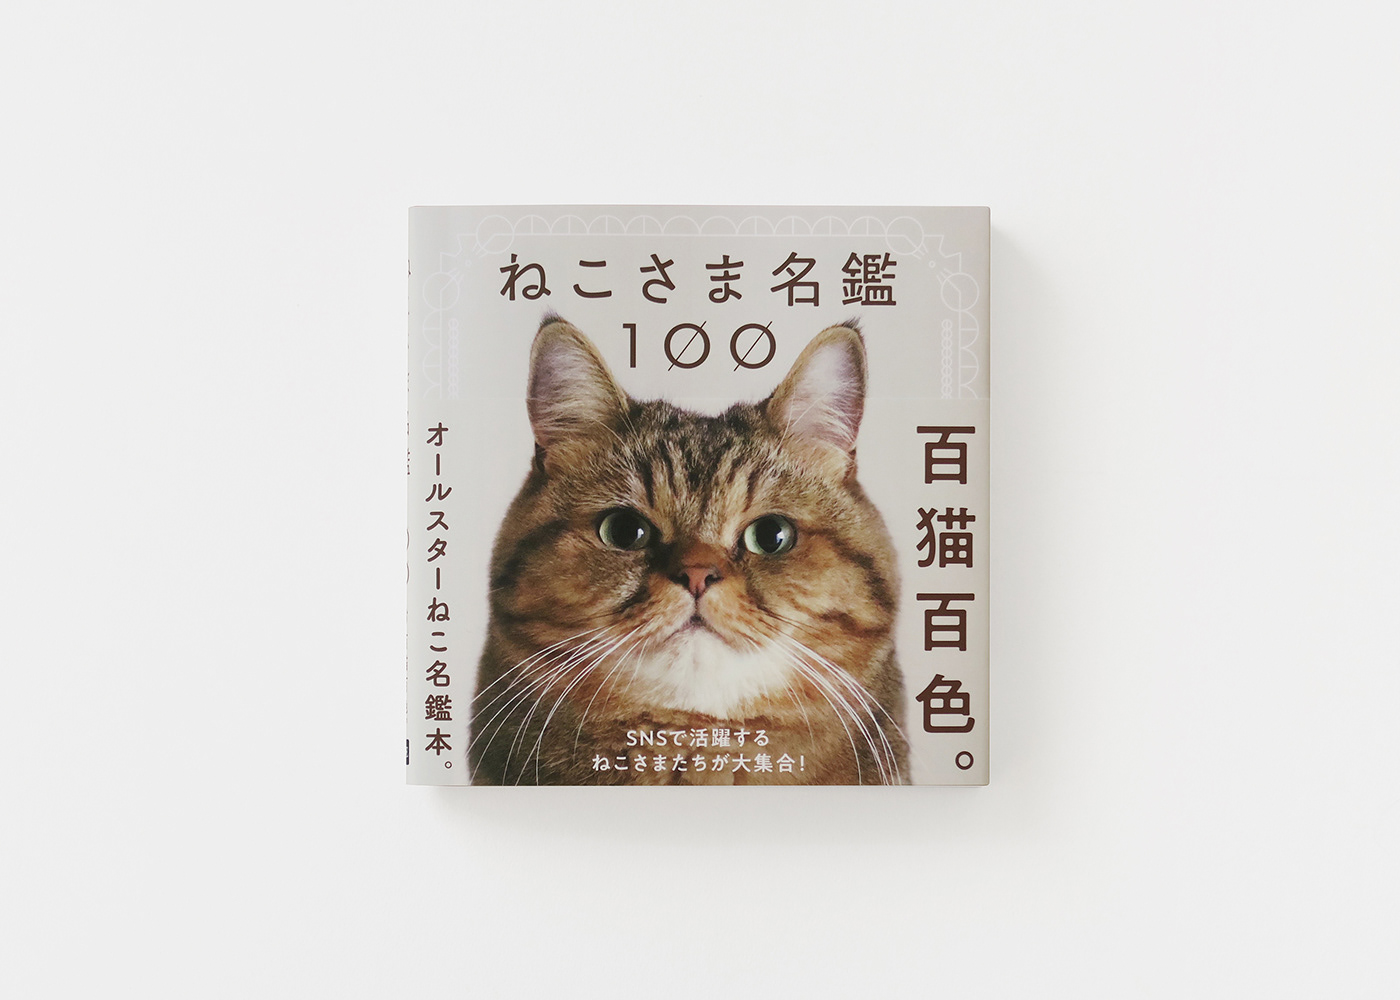 book design Cat graphic design  photo book